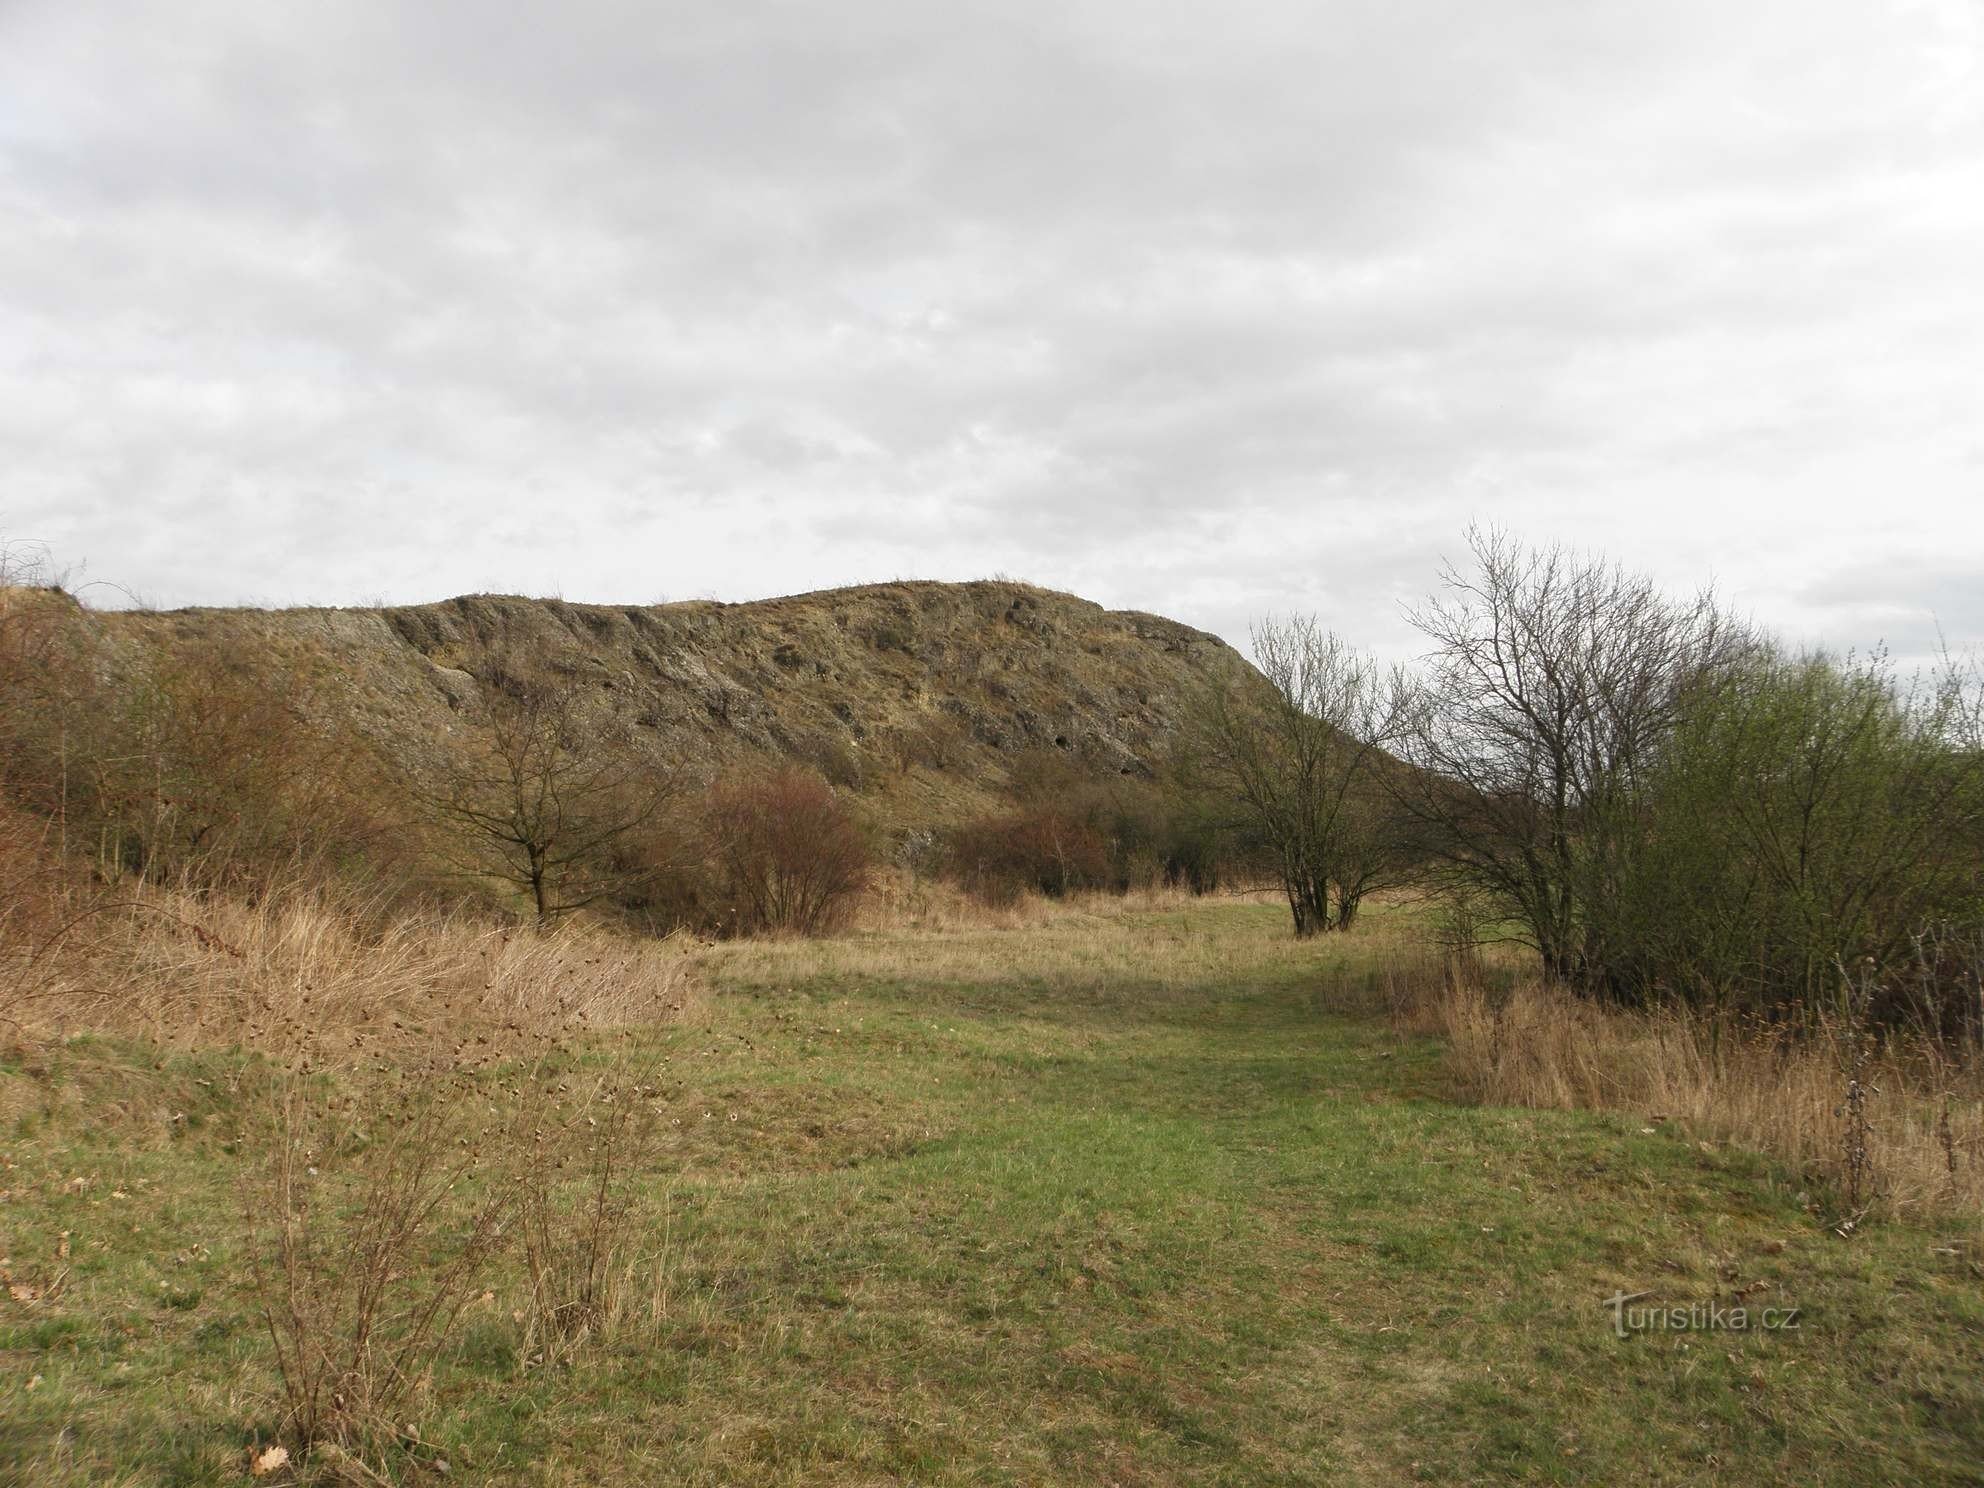 天然記念物ホルカ - 主要な丘の上の以前に発掘されたプラットフォーム - 2.4.2012 年 XNUMX 月 XNUMX 日